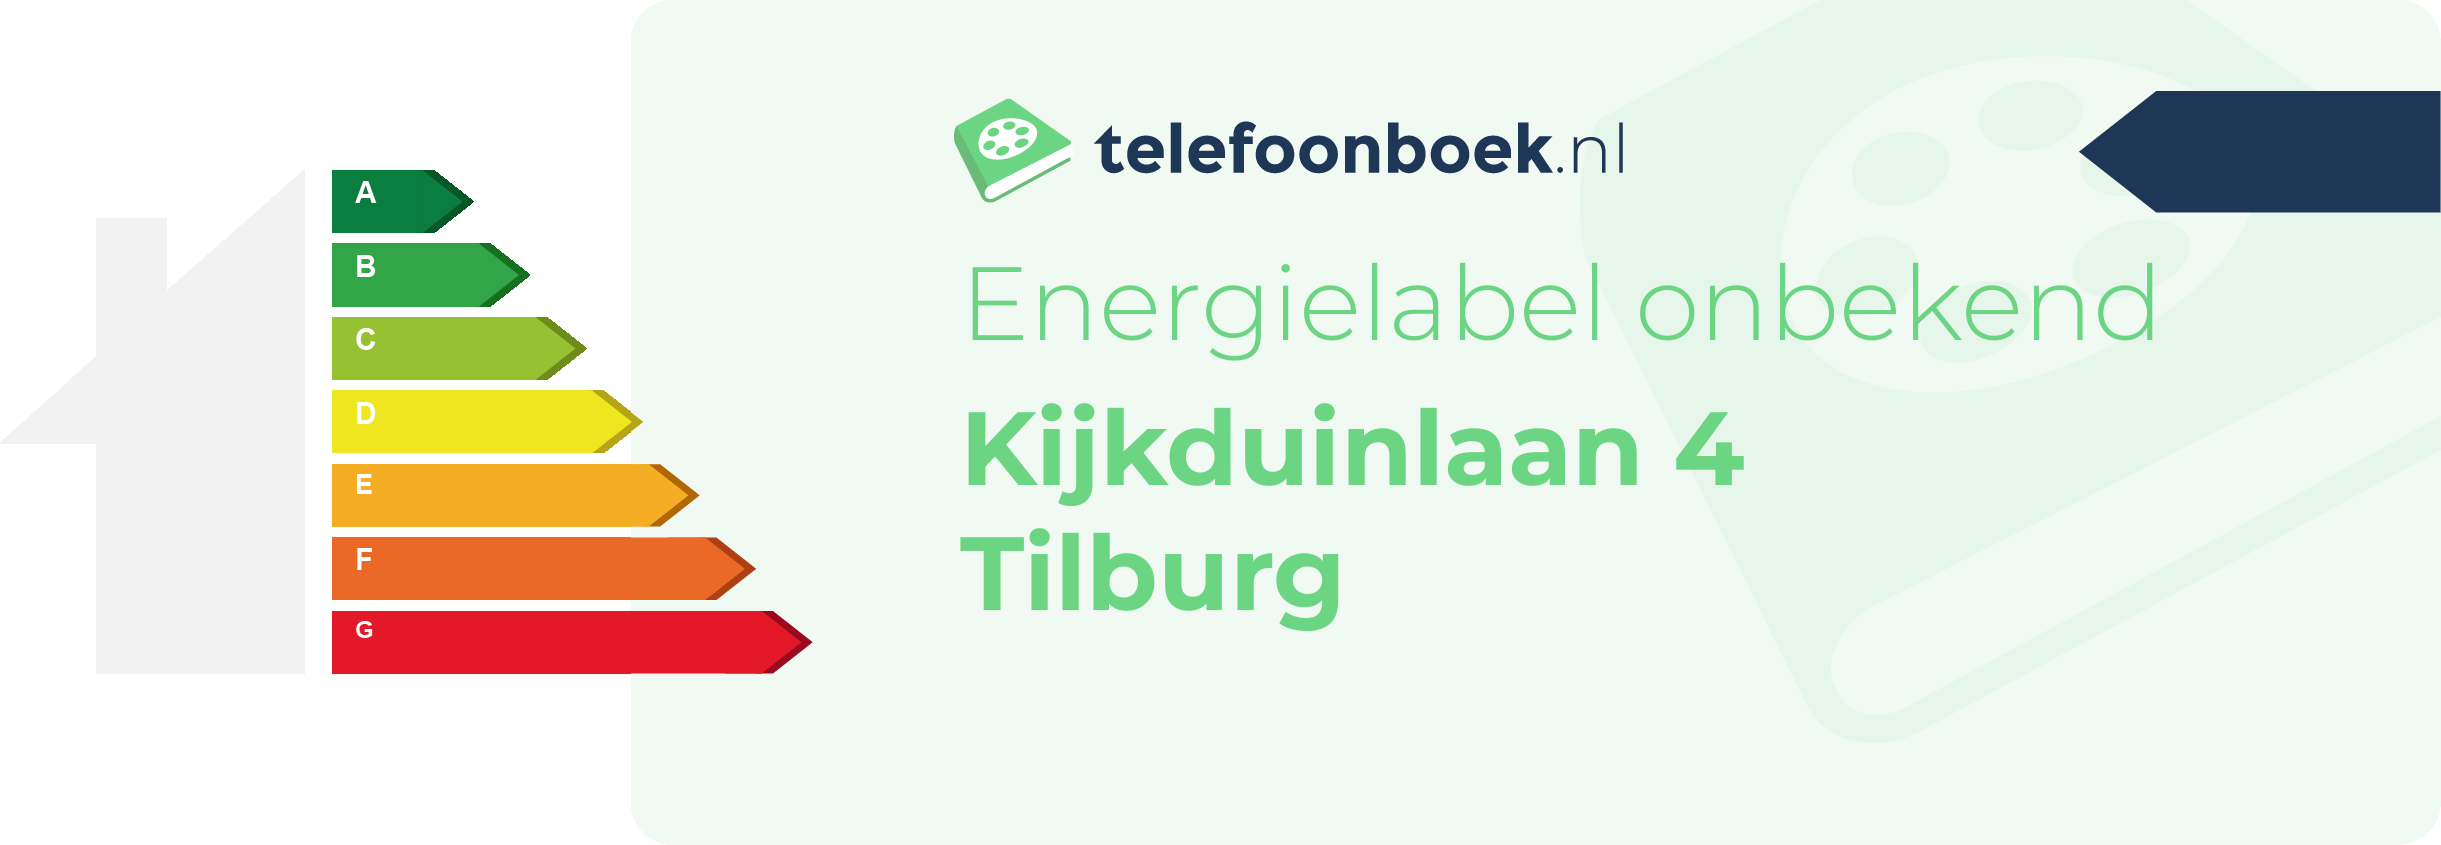 Energielabel Kijkduinlaan 4 Tilburg